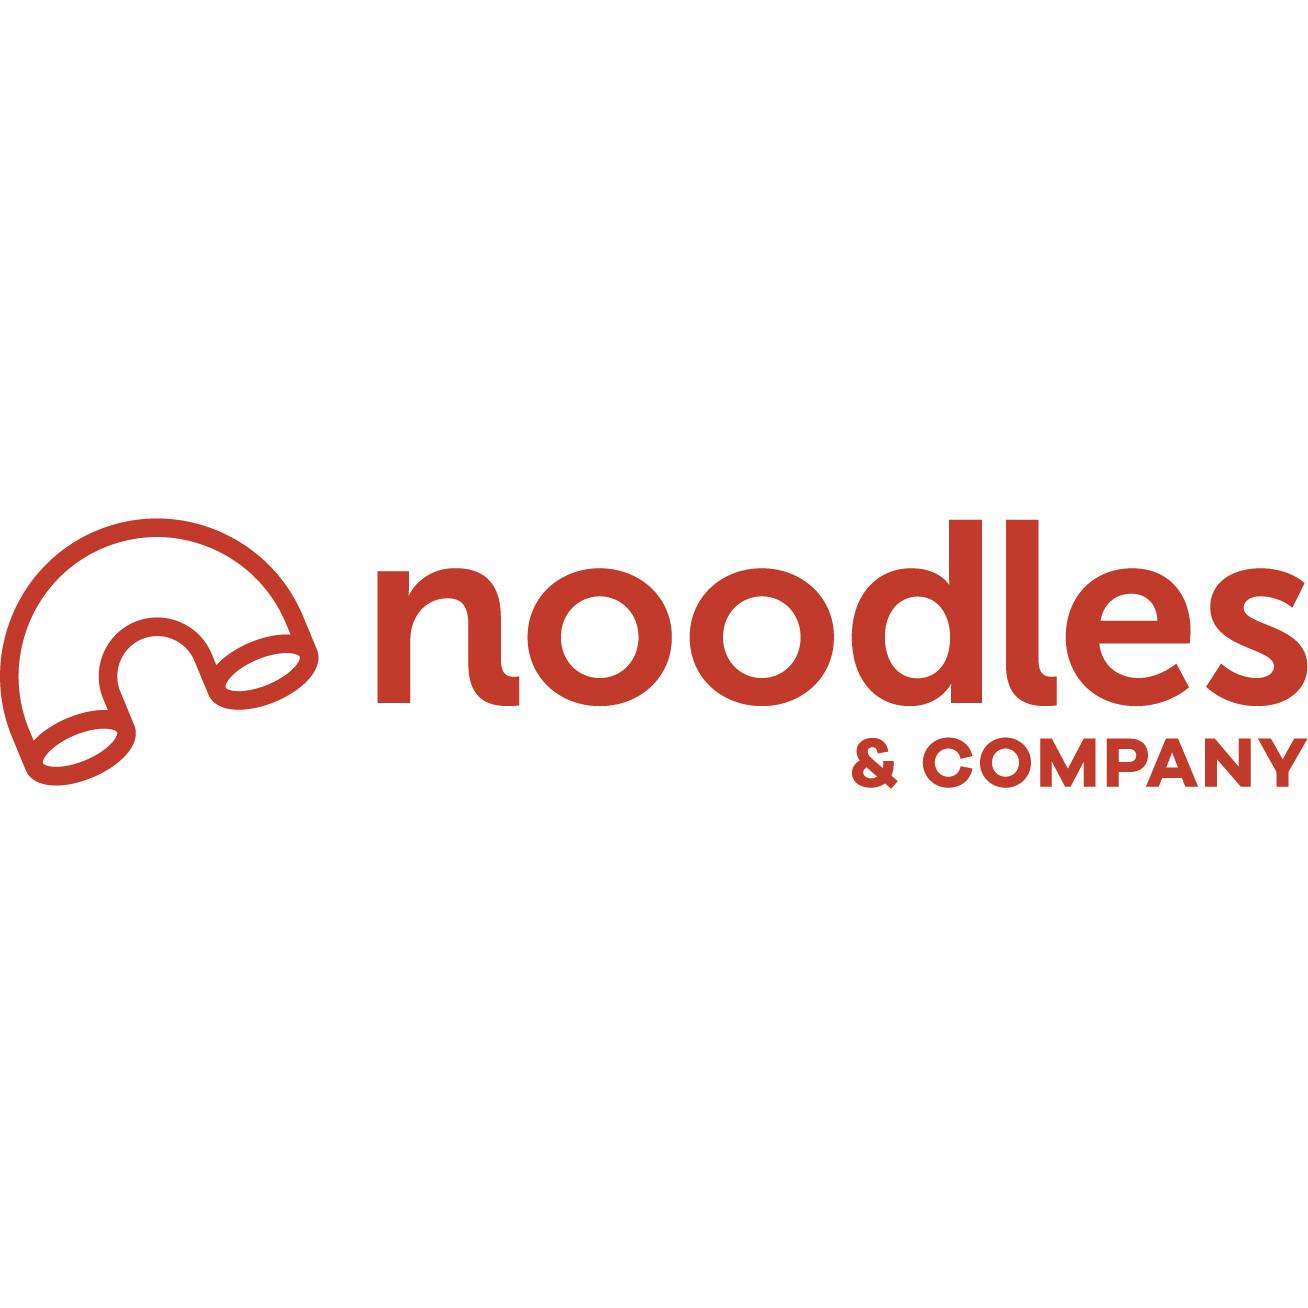 Noodles & Company - Fond du Lac menu in Fond du Lac, WI 54935